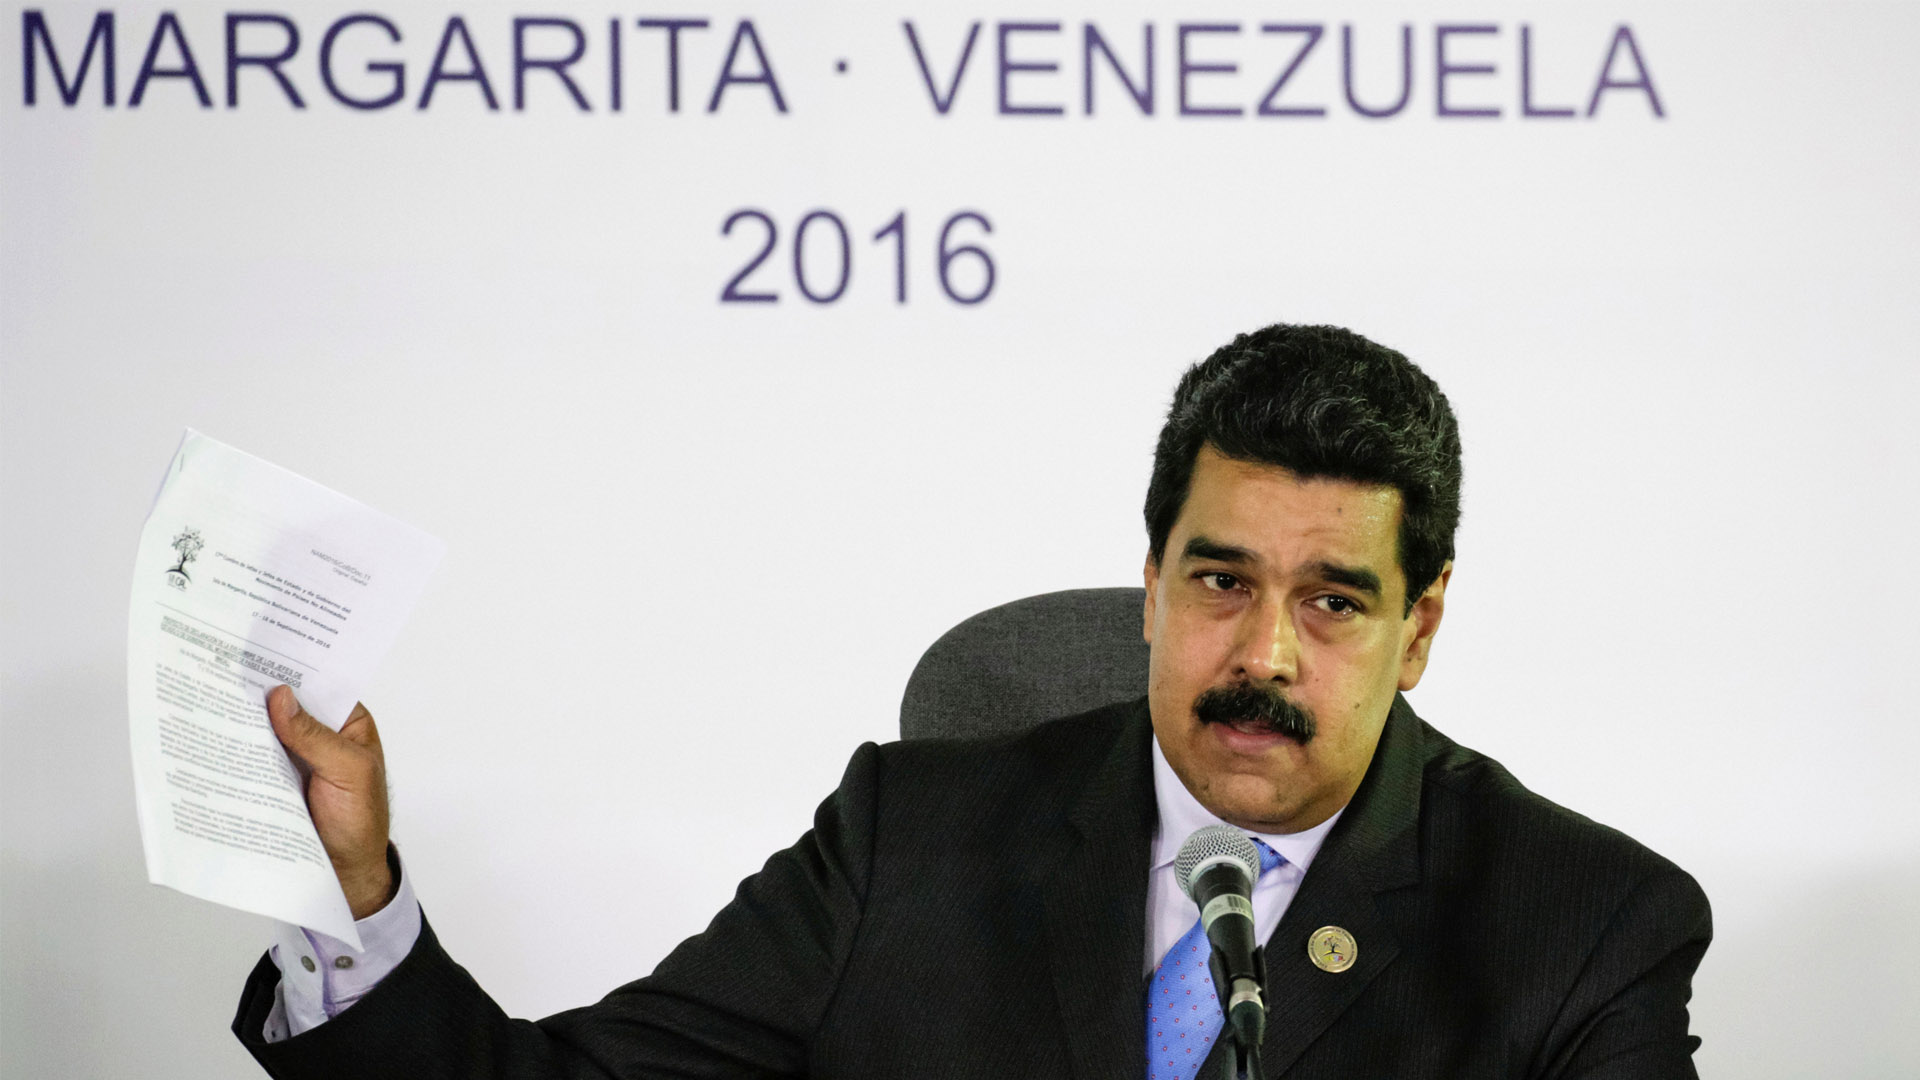 El mandatario venezolano destacó lo que trabajará durante su periodo en la presidencia del Movimiento de Países No Alineados